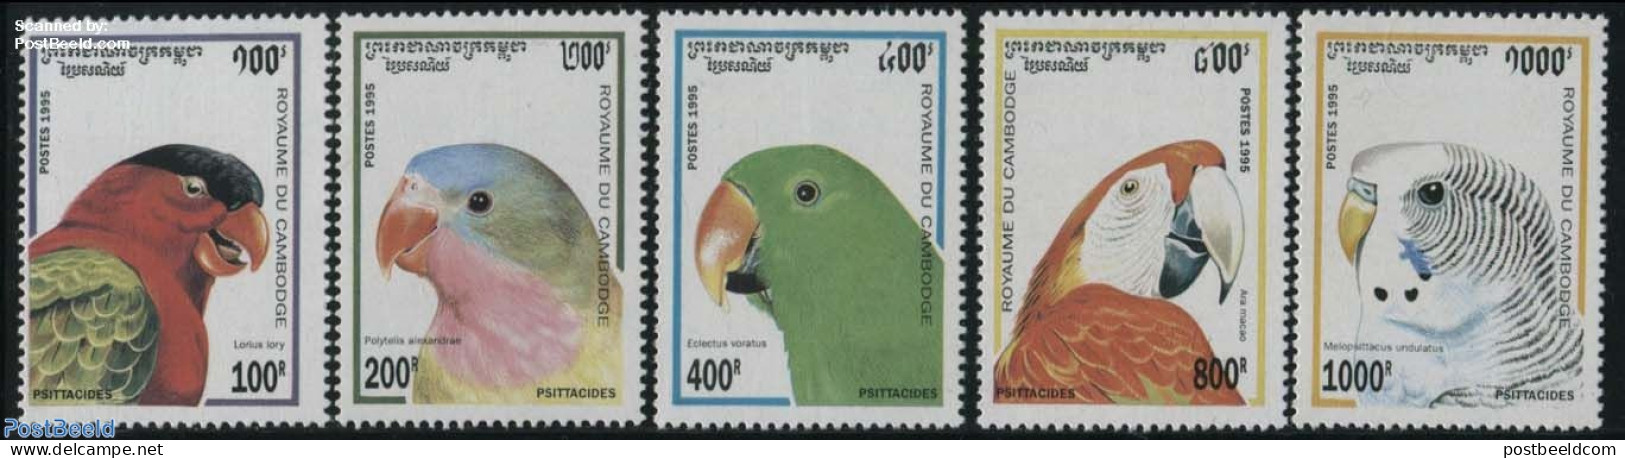 Cambodia 1995 Parrots 5v, Mint NH, Nature - Birds - Parrots - Cambodge